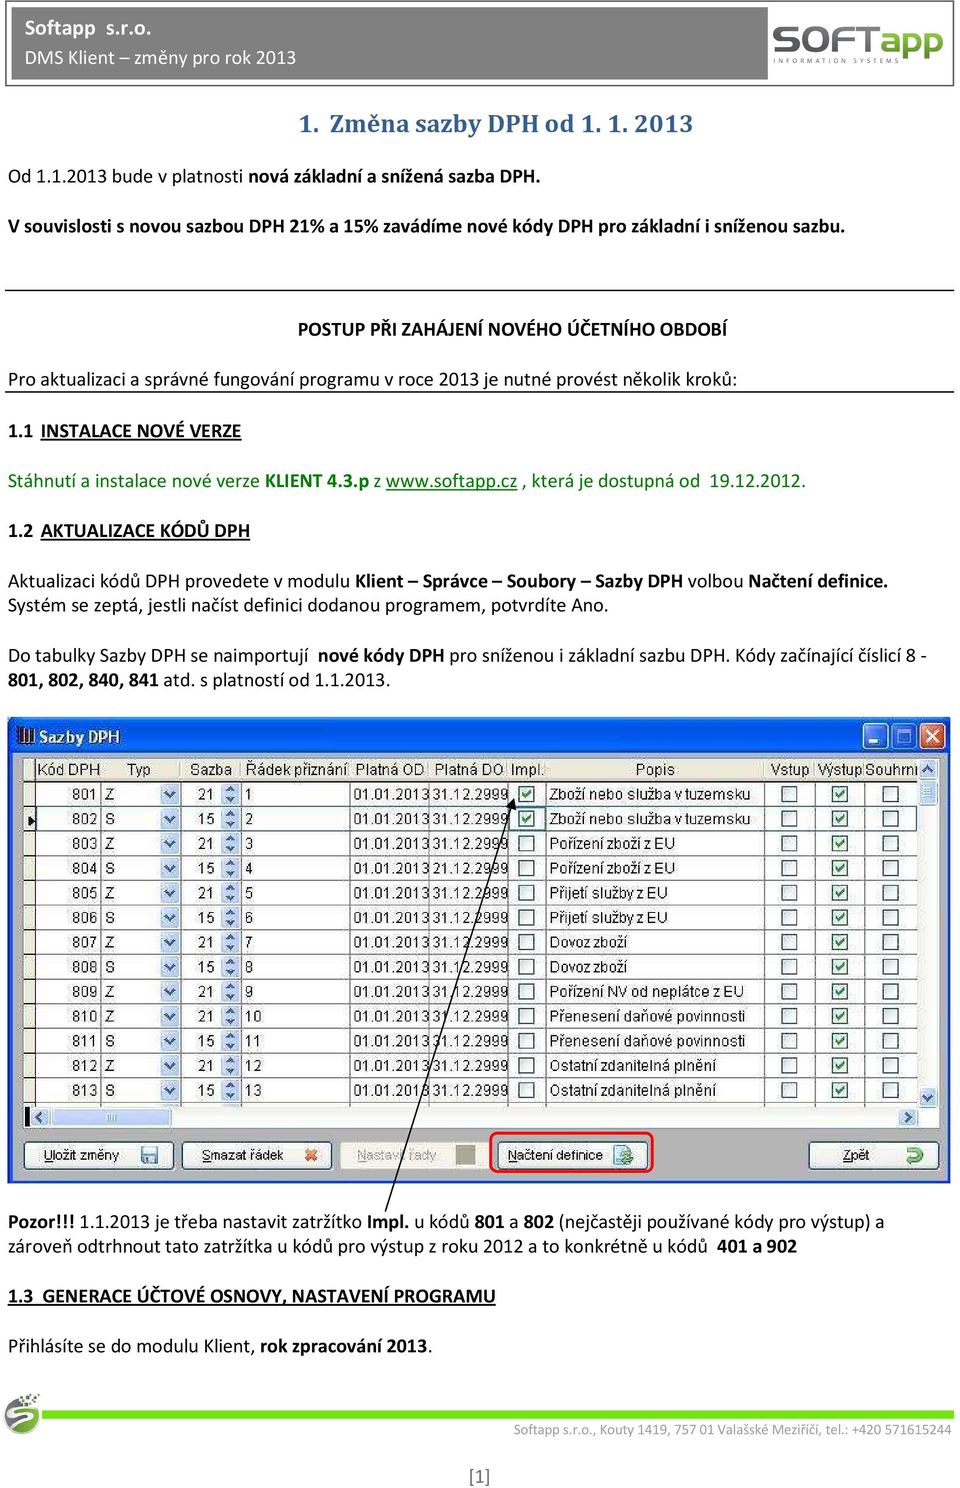 softapp.cz, která je dostupná od 19.12.2012. 1.2 AKTUALIZACE KÓDŮ DPH Aktualizaci kódů DPH provedete v modulu Klient Správce Soubory Sazby DPH volbou Načtení definice.